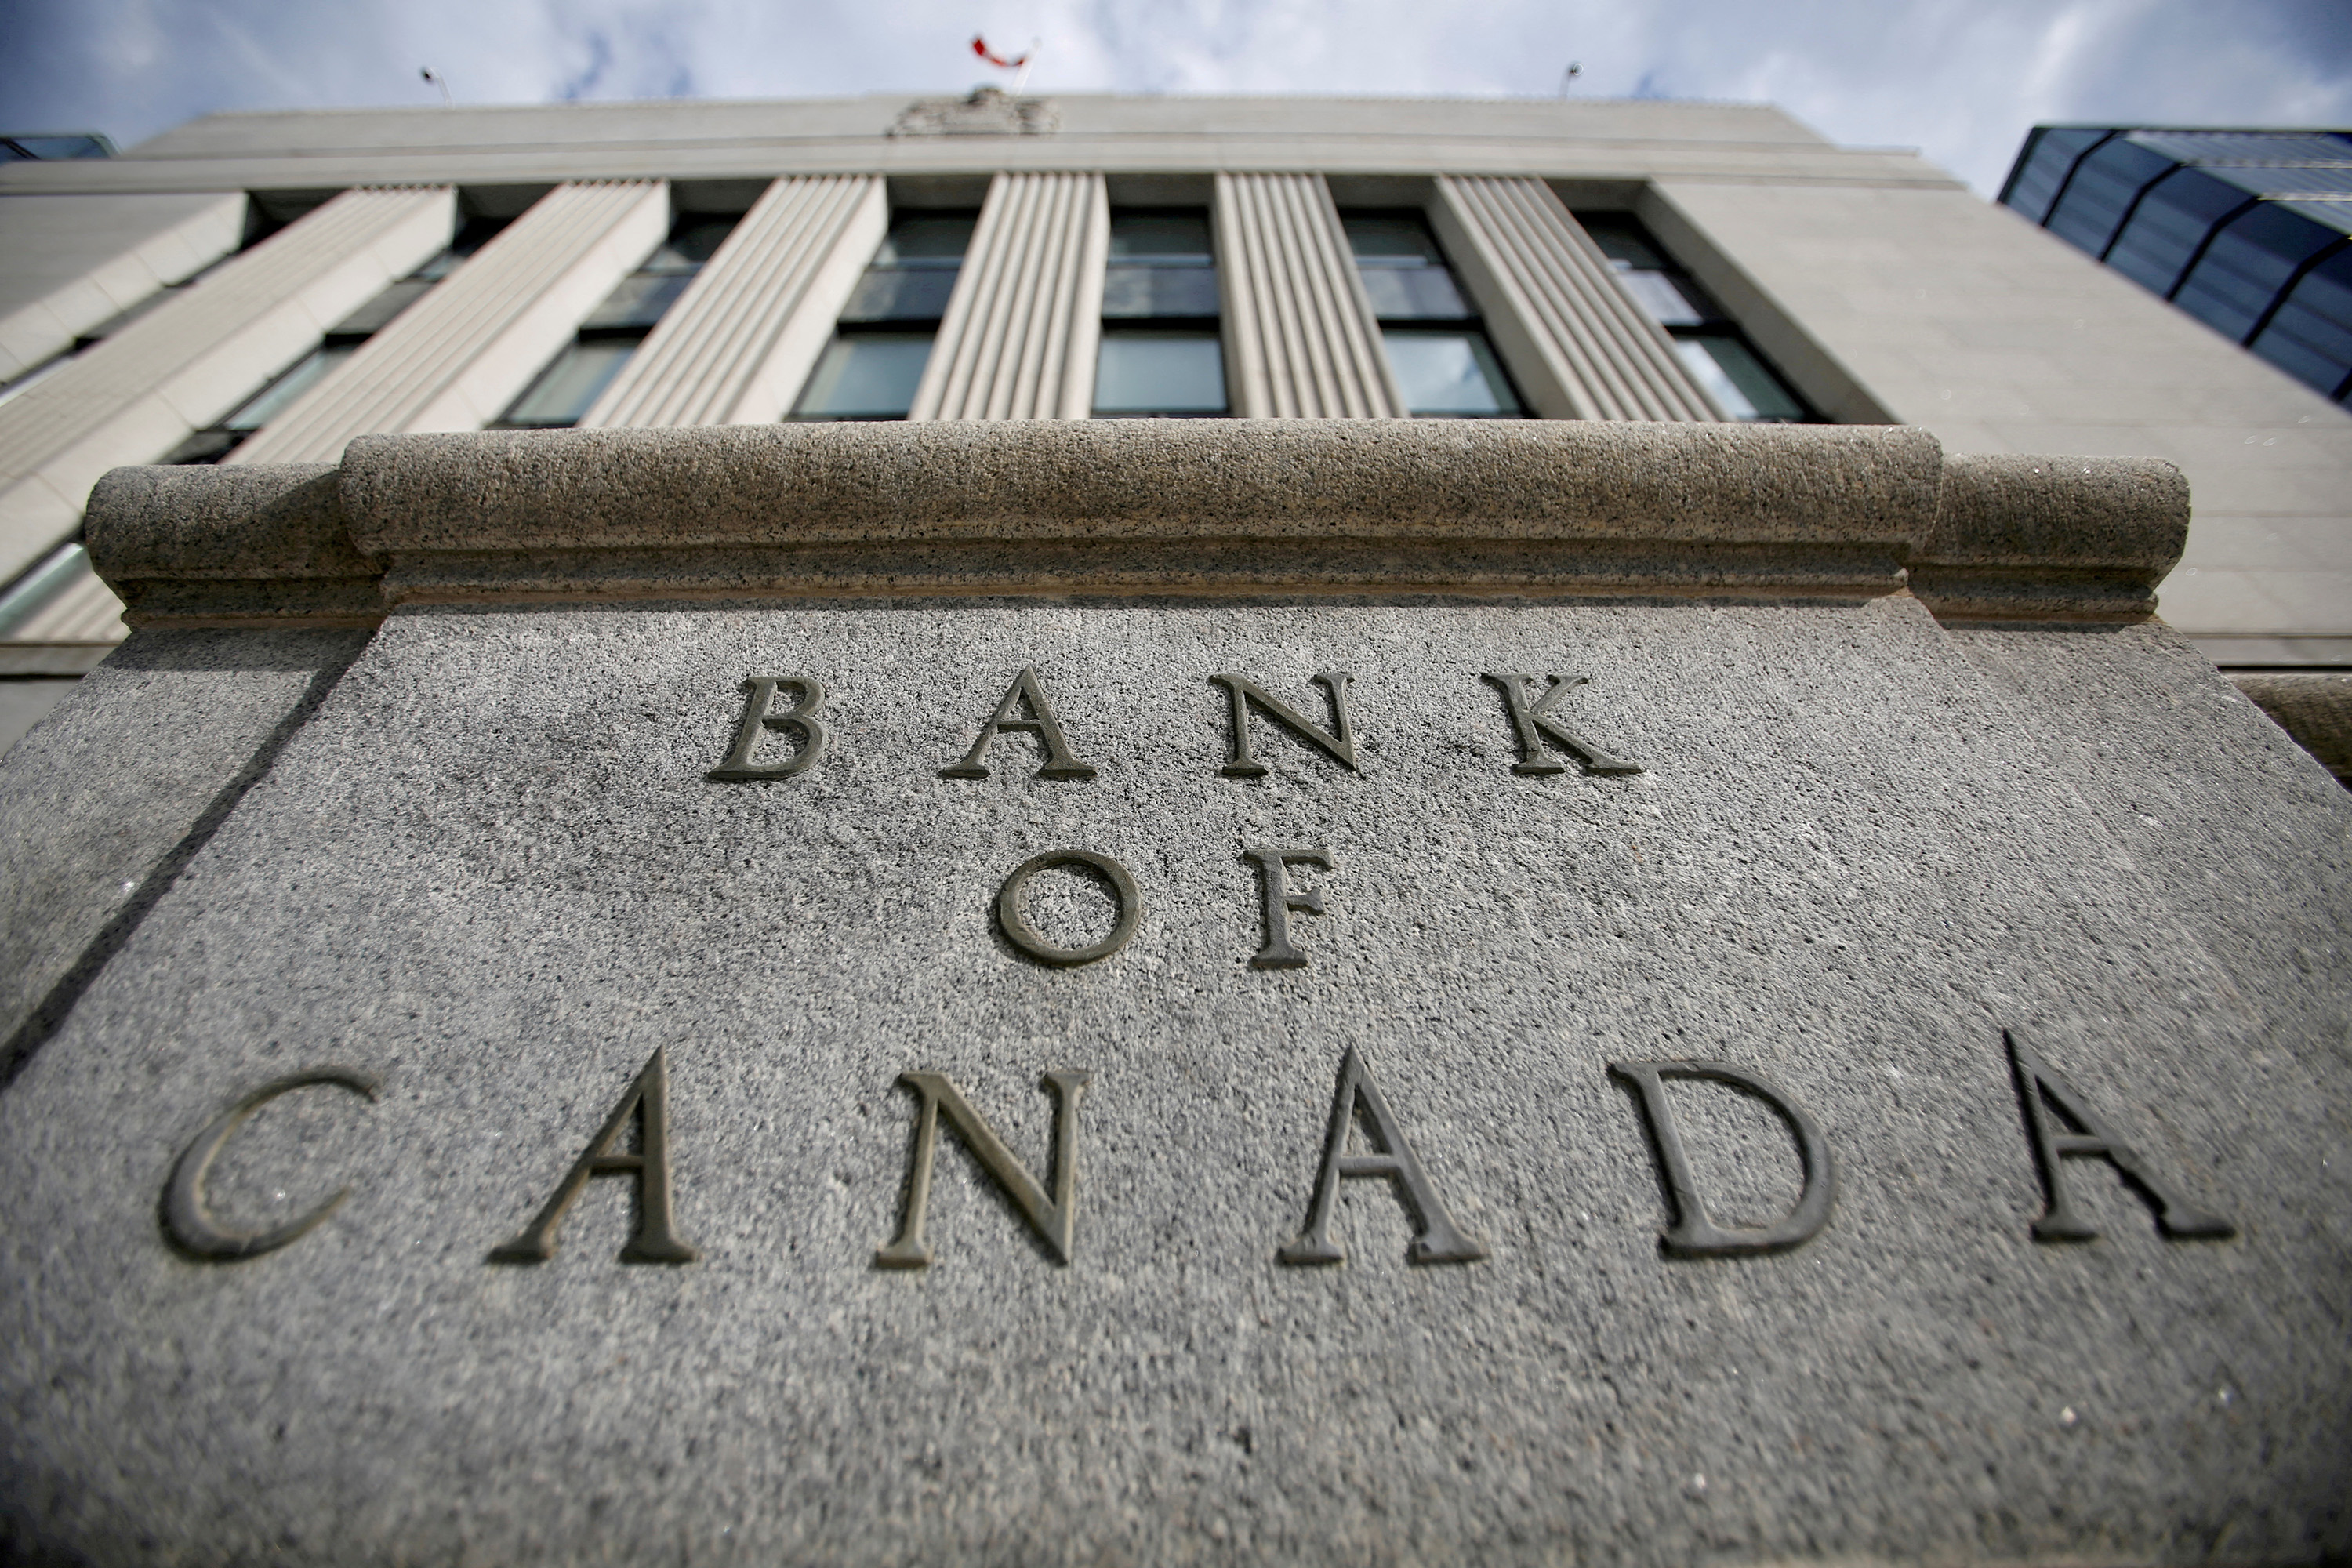 على خلاف التوقعات .. بنك كندا المركزي يرفع سعر الفائدة